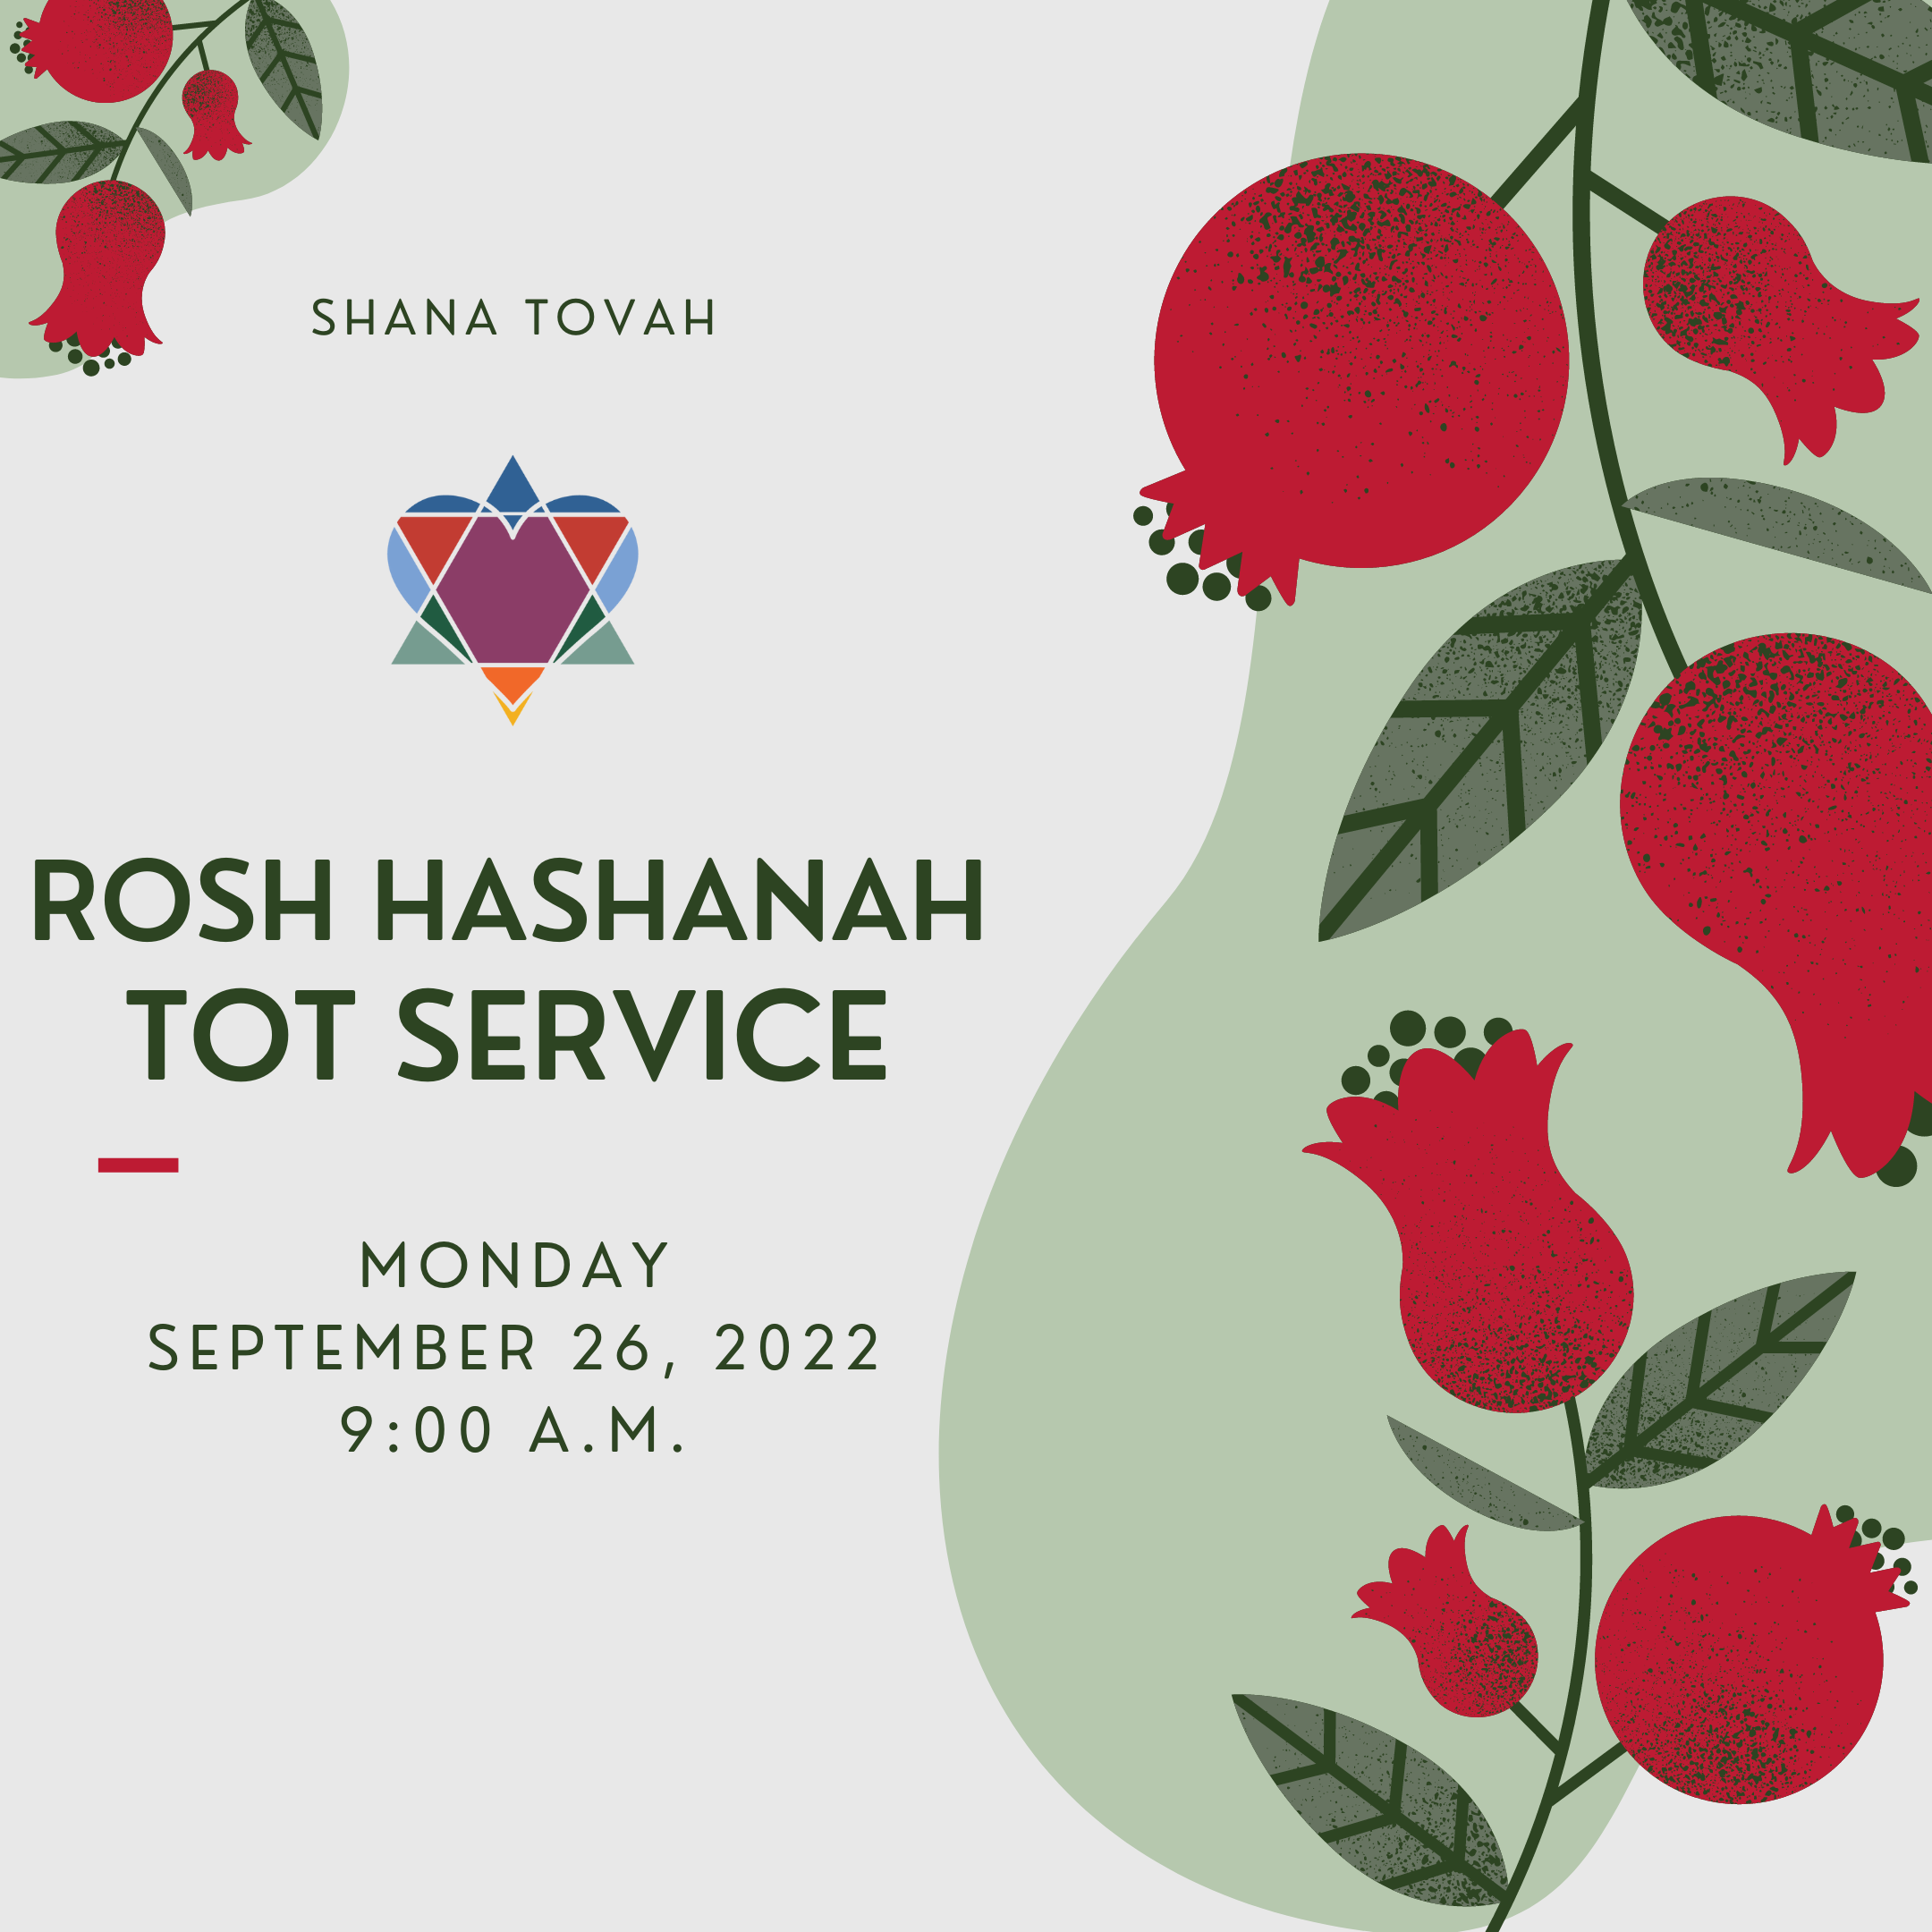 ROSH HASHANAH TOT SERVICE